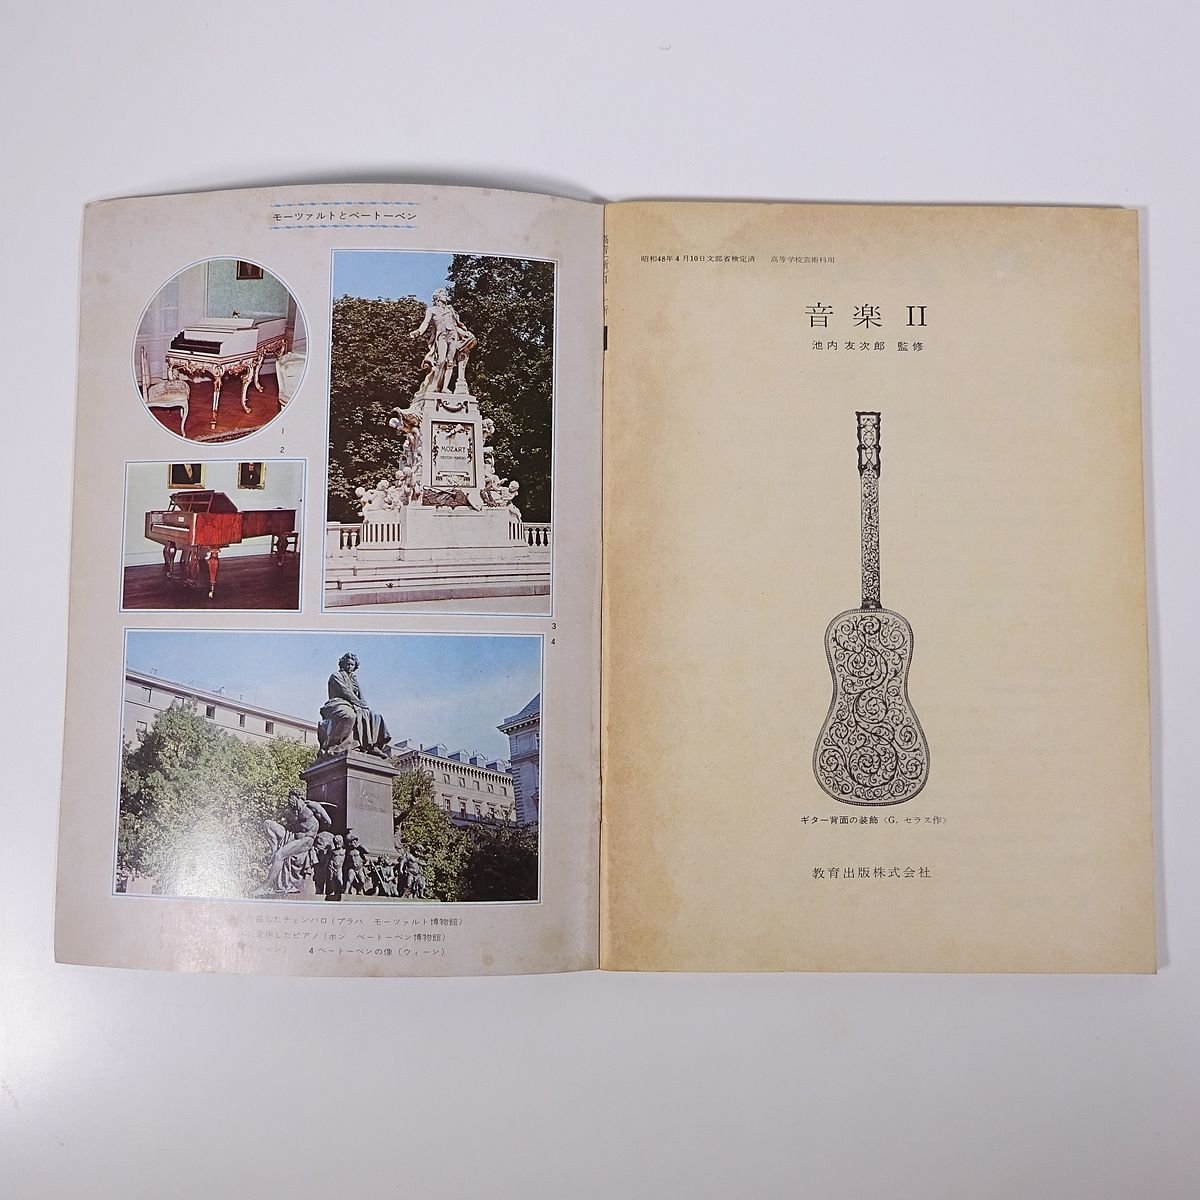 【楽譜】 改訂 音楽 Ⅱ 池内友次郎監修 教育出版 1976 大型本 教科書 音楽_画像5